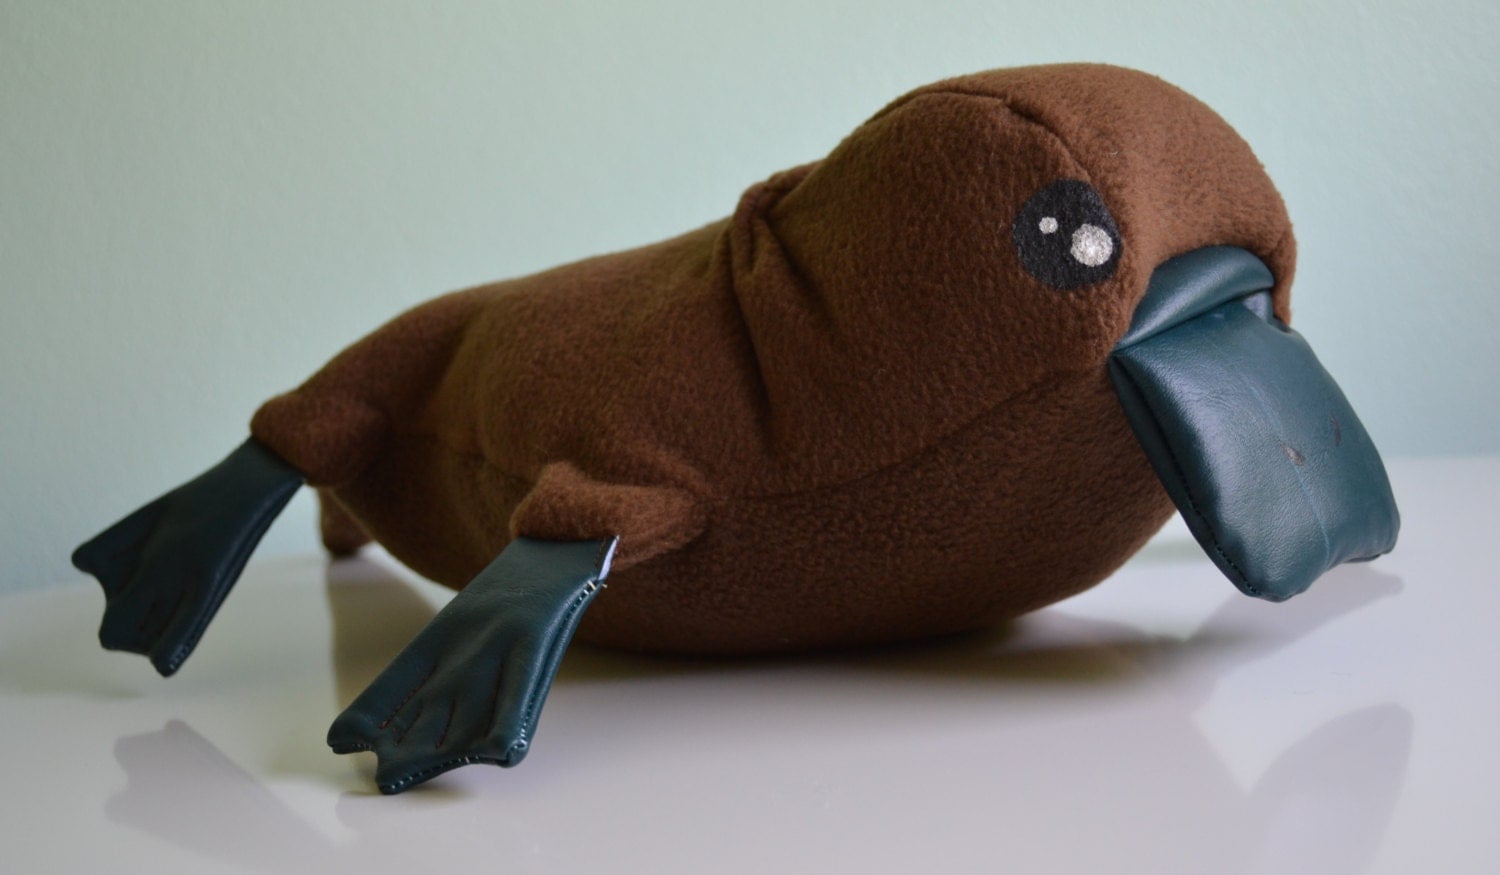 mojo duck billed platypus toy figure